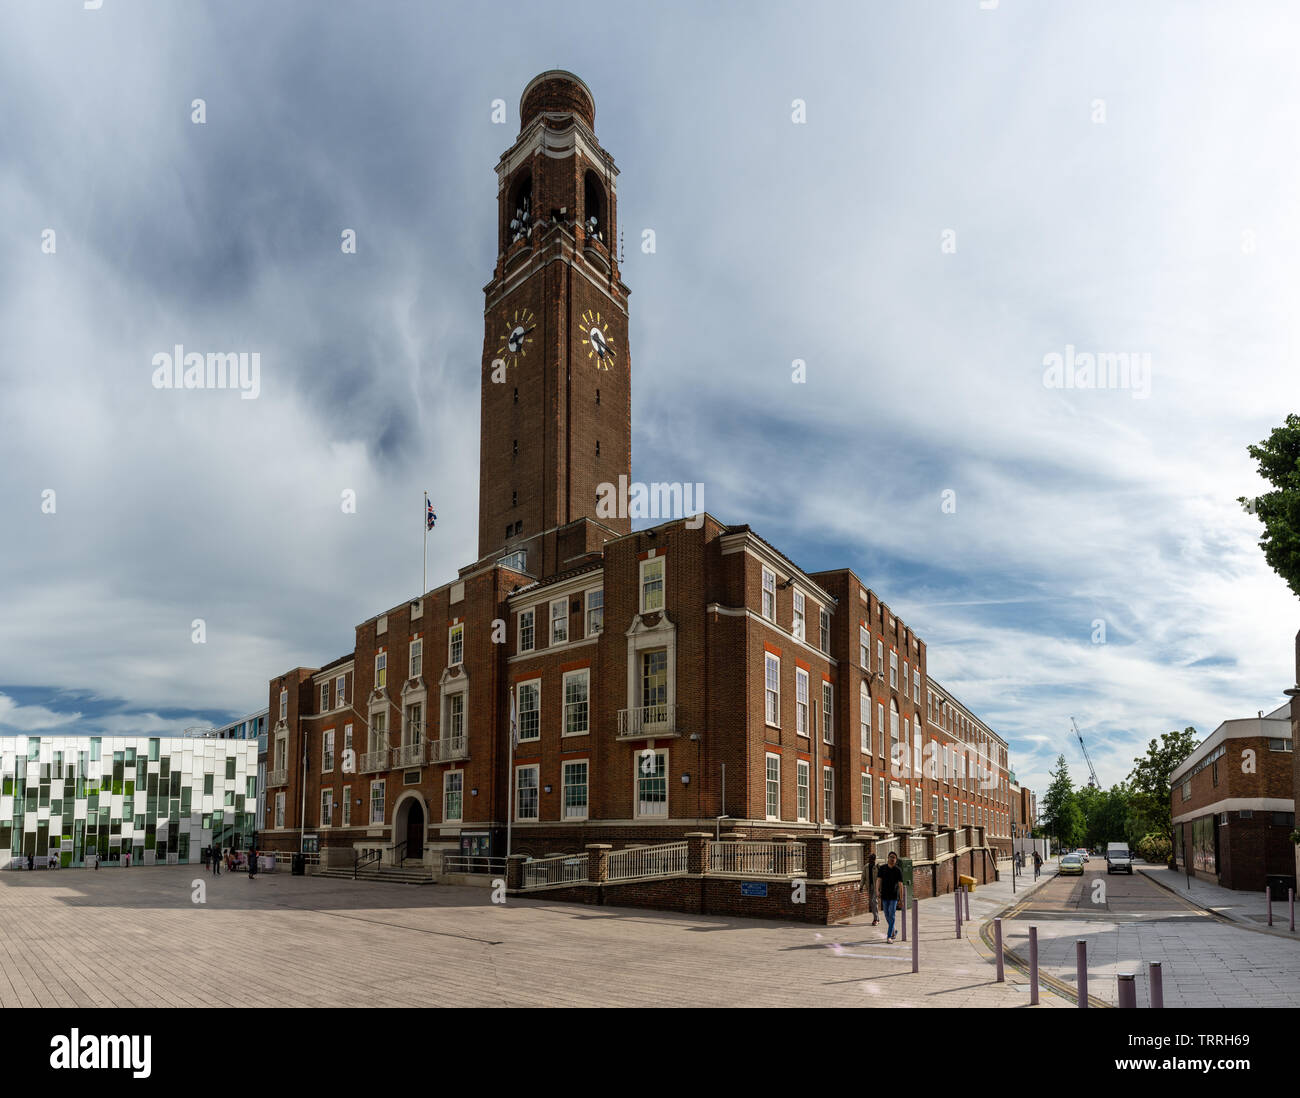 London, England, Regno Unito - 1 Giugno 2019: il sole splende sul ventesimo secolo mattone Barking Town Hall, sede del London Borough of Barking e Dagenham consiglio Foto Stock